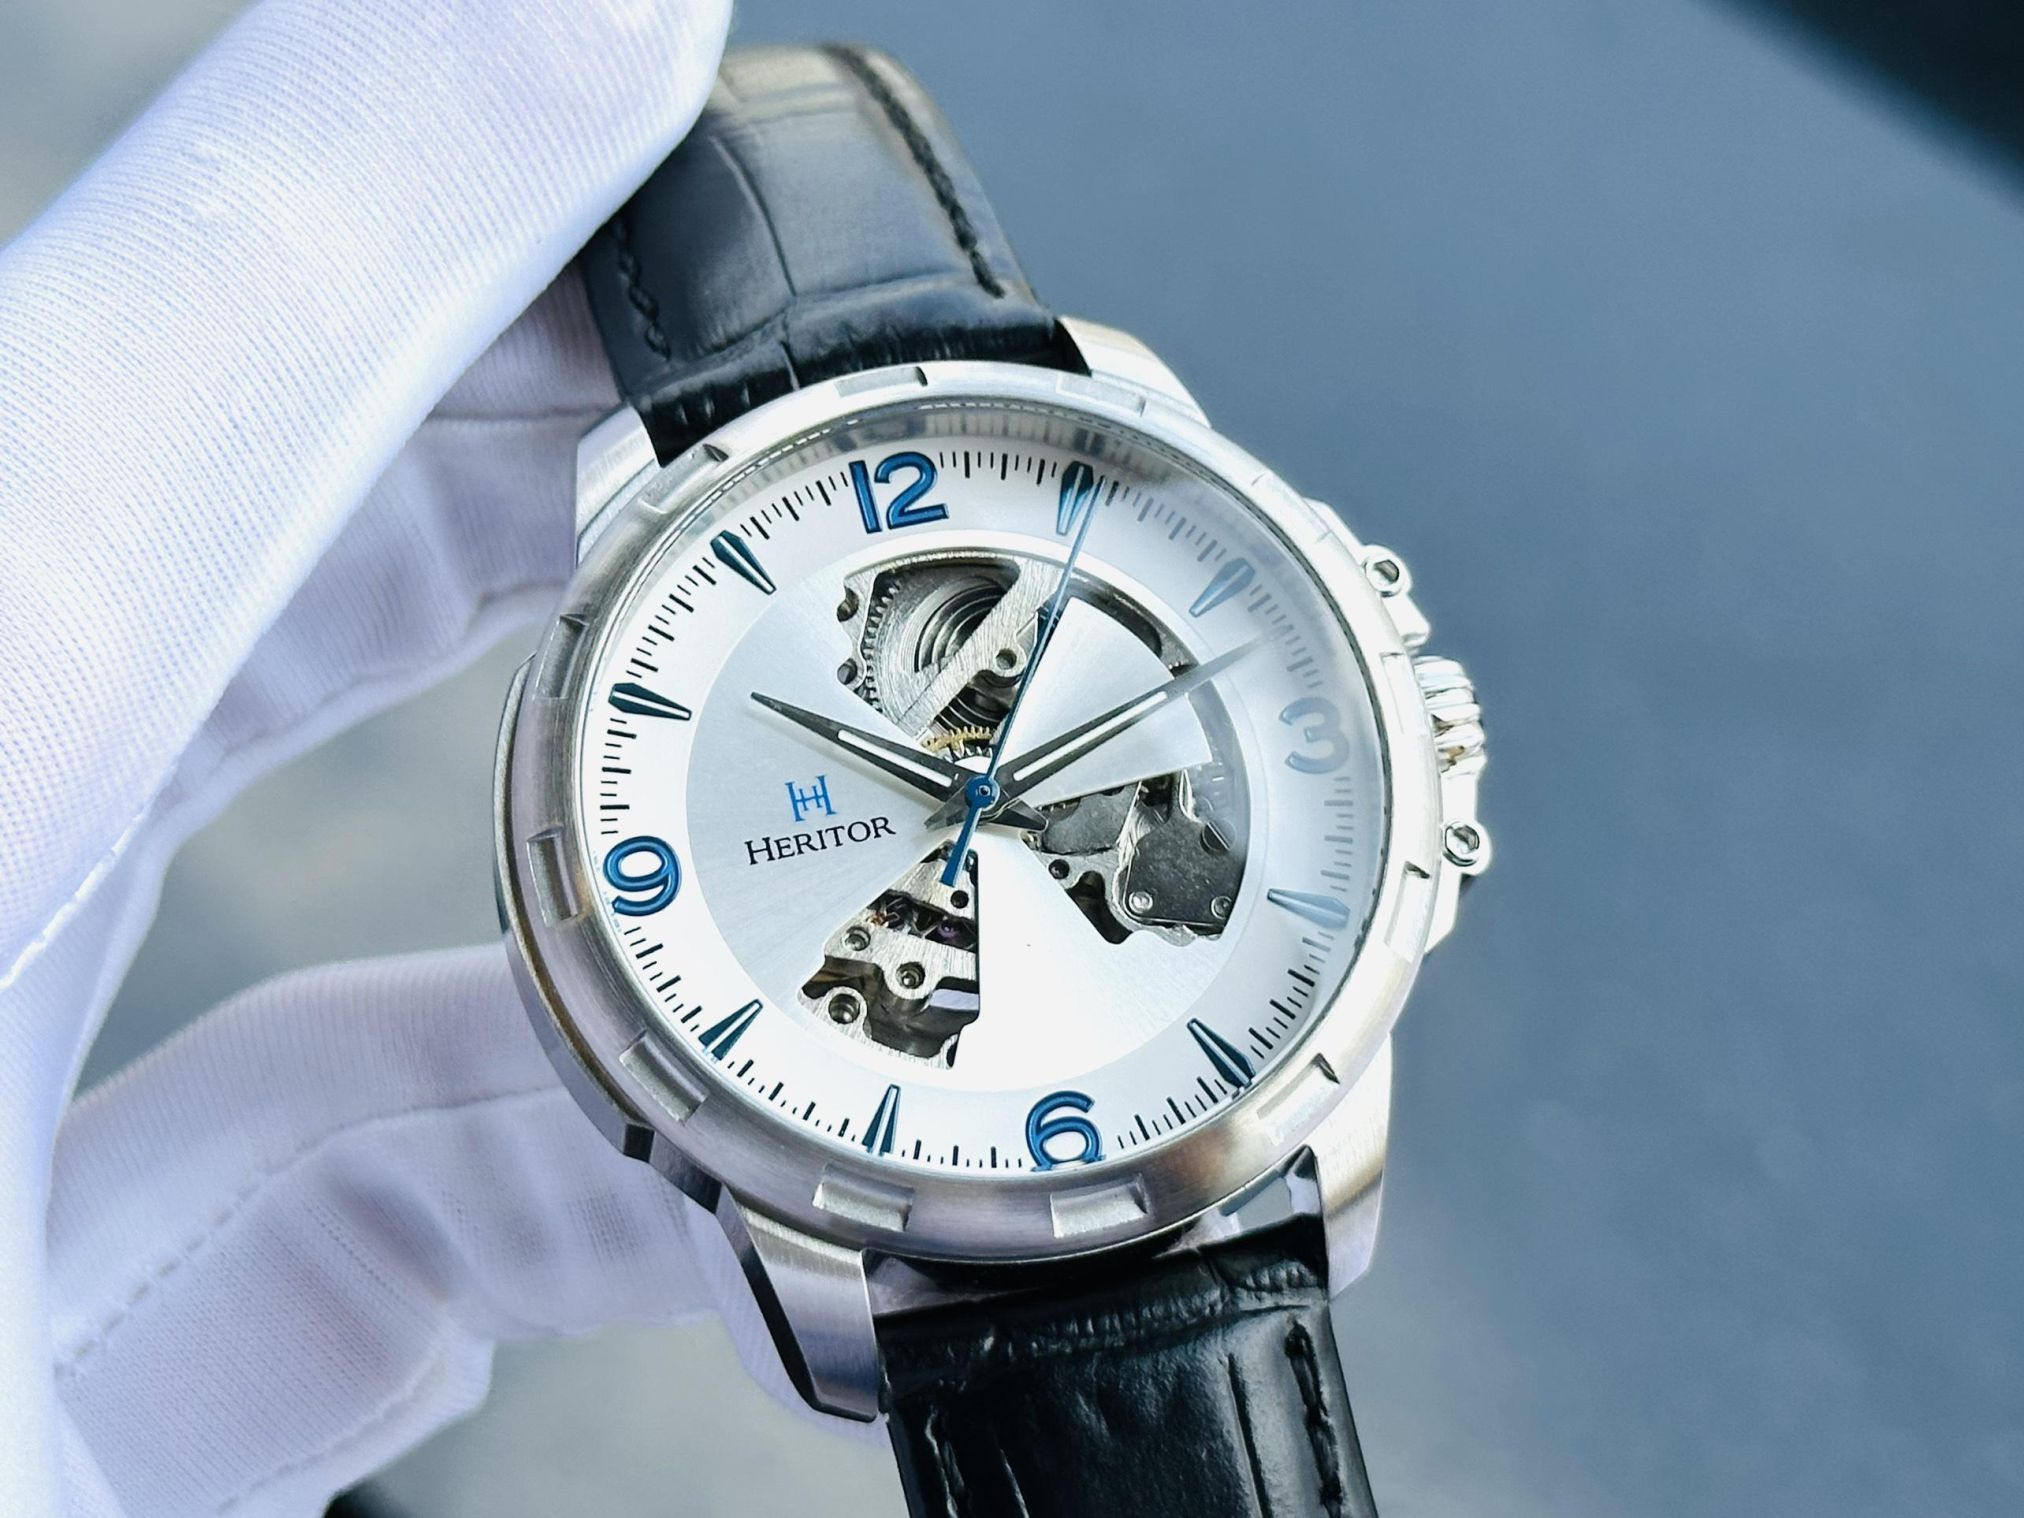 Đồng hồ Heritor Automatic Theo Semi-Skeleton Kết hợp hoàn hảo giữa cổ điển và hiện đại